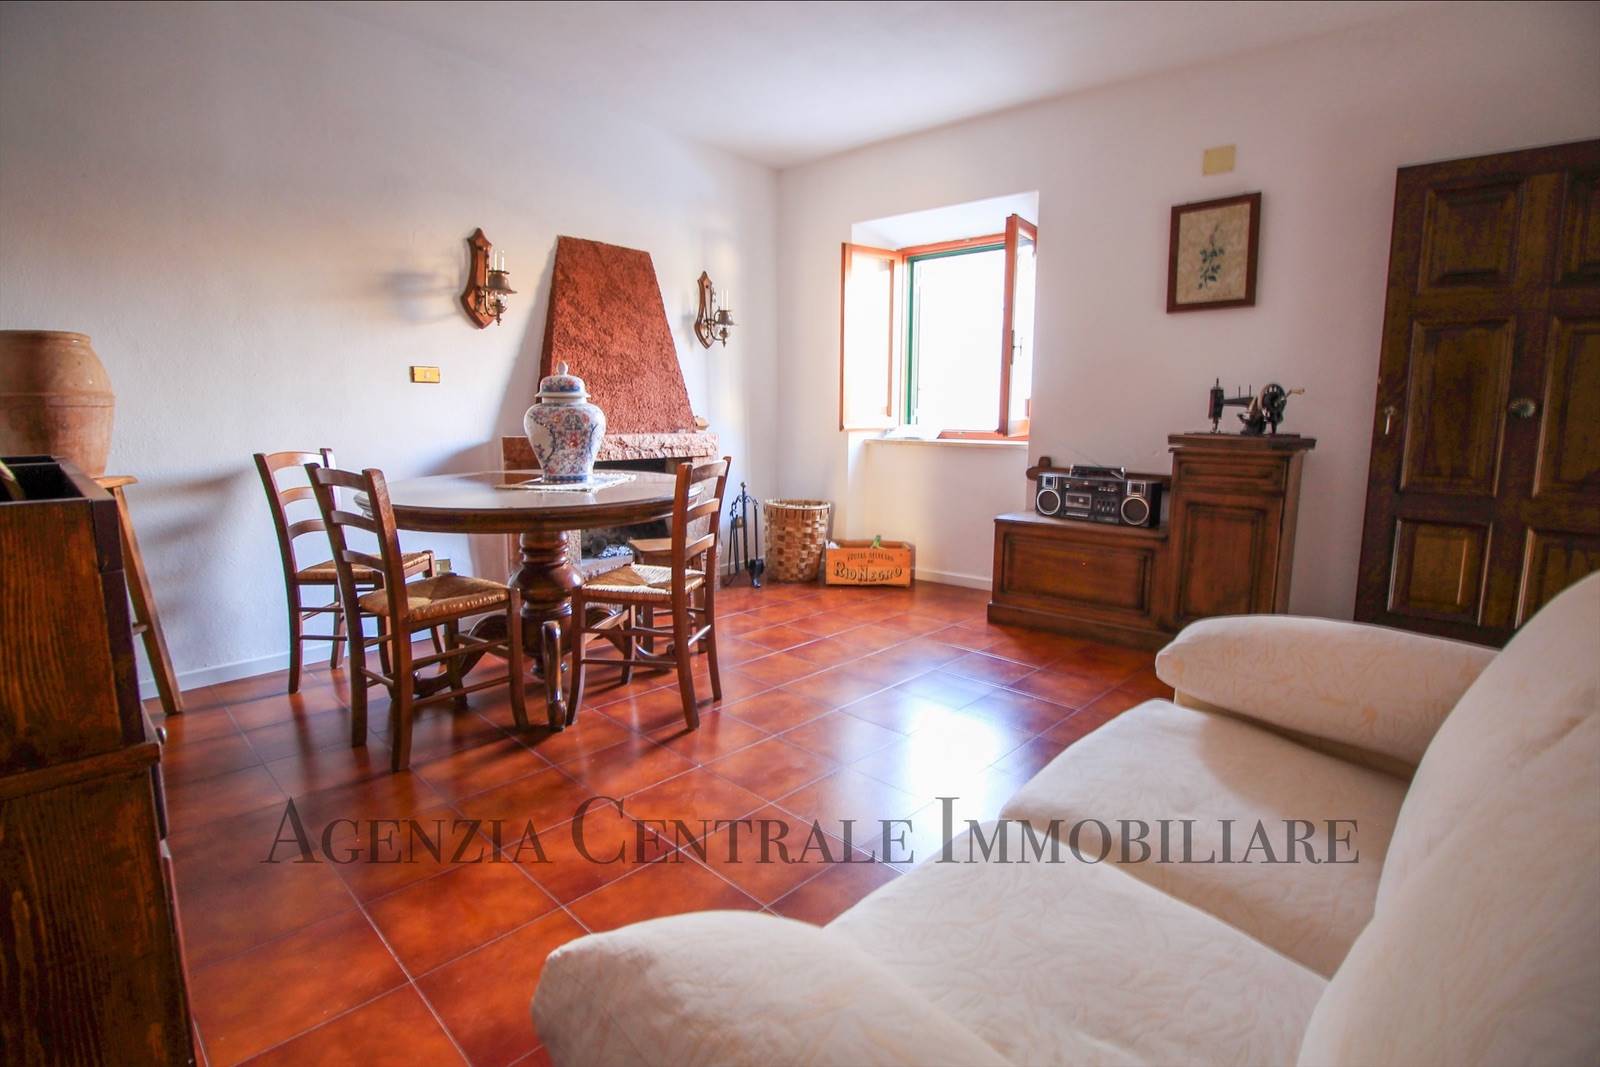 Appartamento in vendita a Campagnatico, 4 locali, prezzo € 75.000 | PortaleAgenzieImmobiliari.it